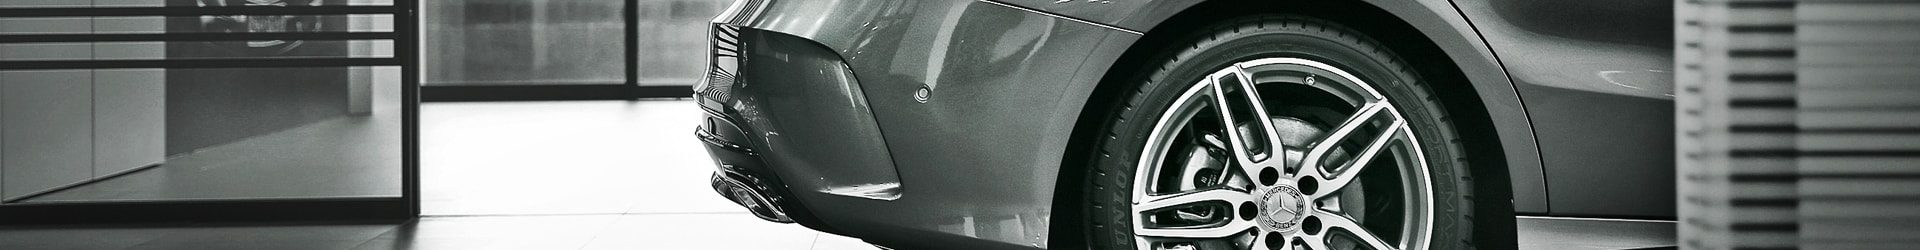 –資優掌門– BMW F30 3 Series 開箱拍攝